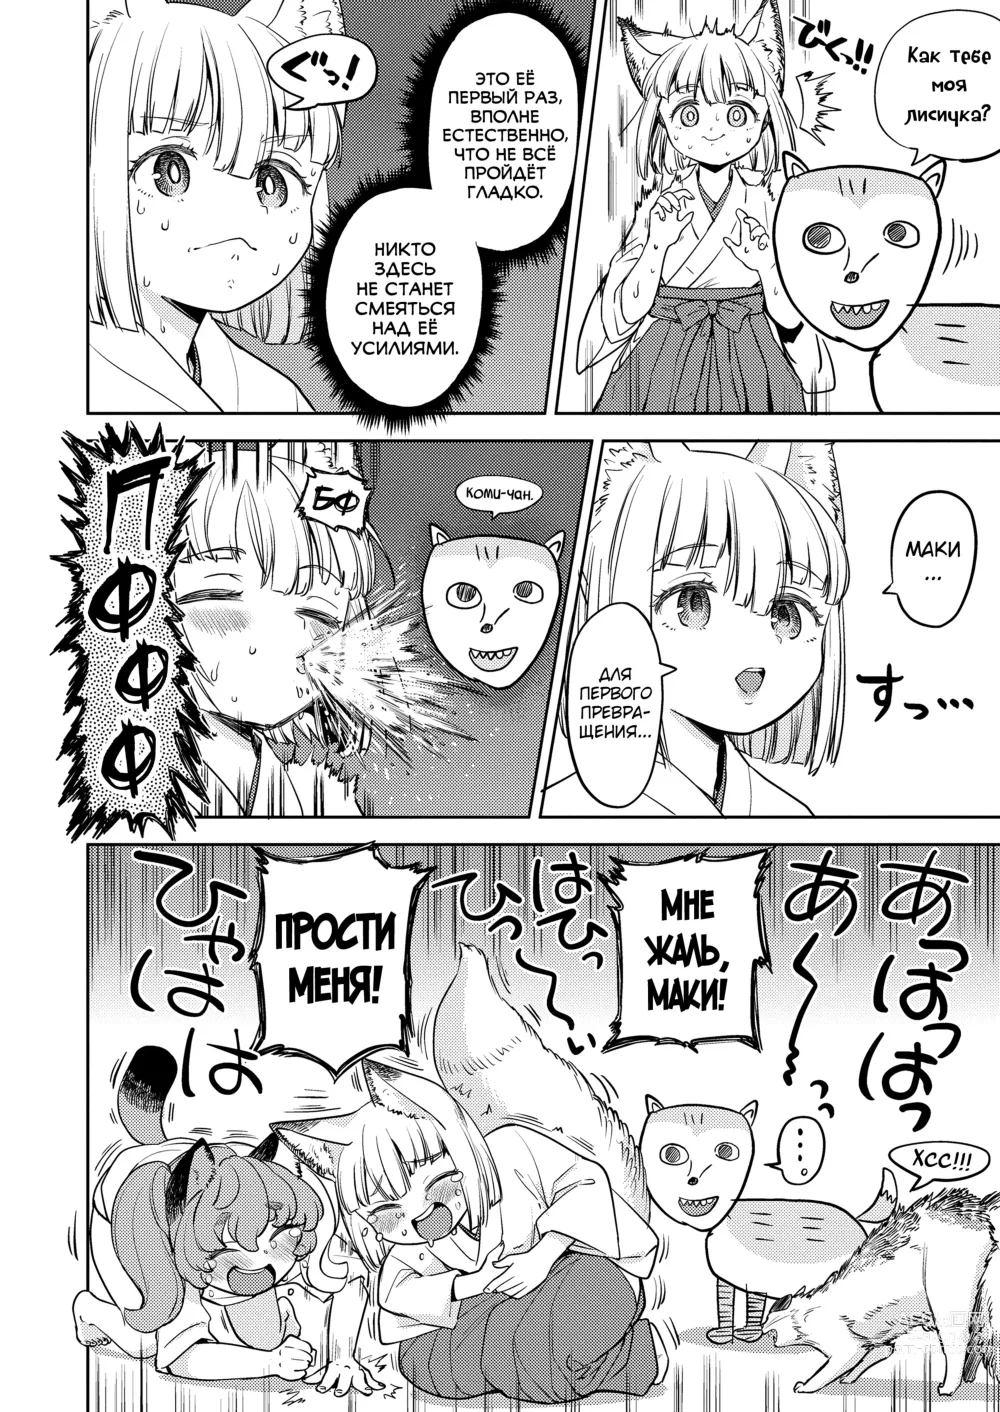 Page 6 of manga Makikomi 5